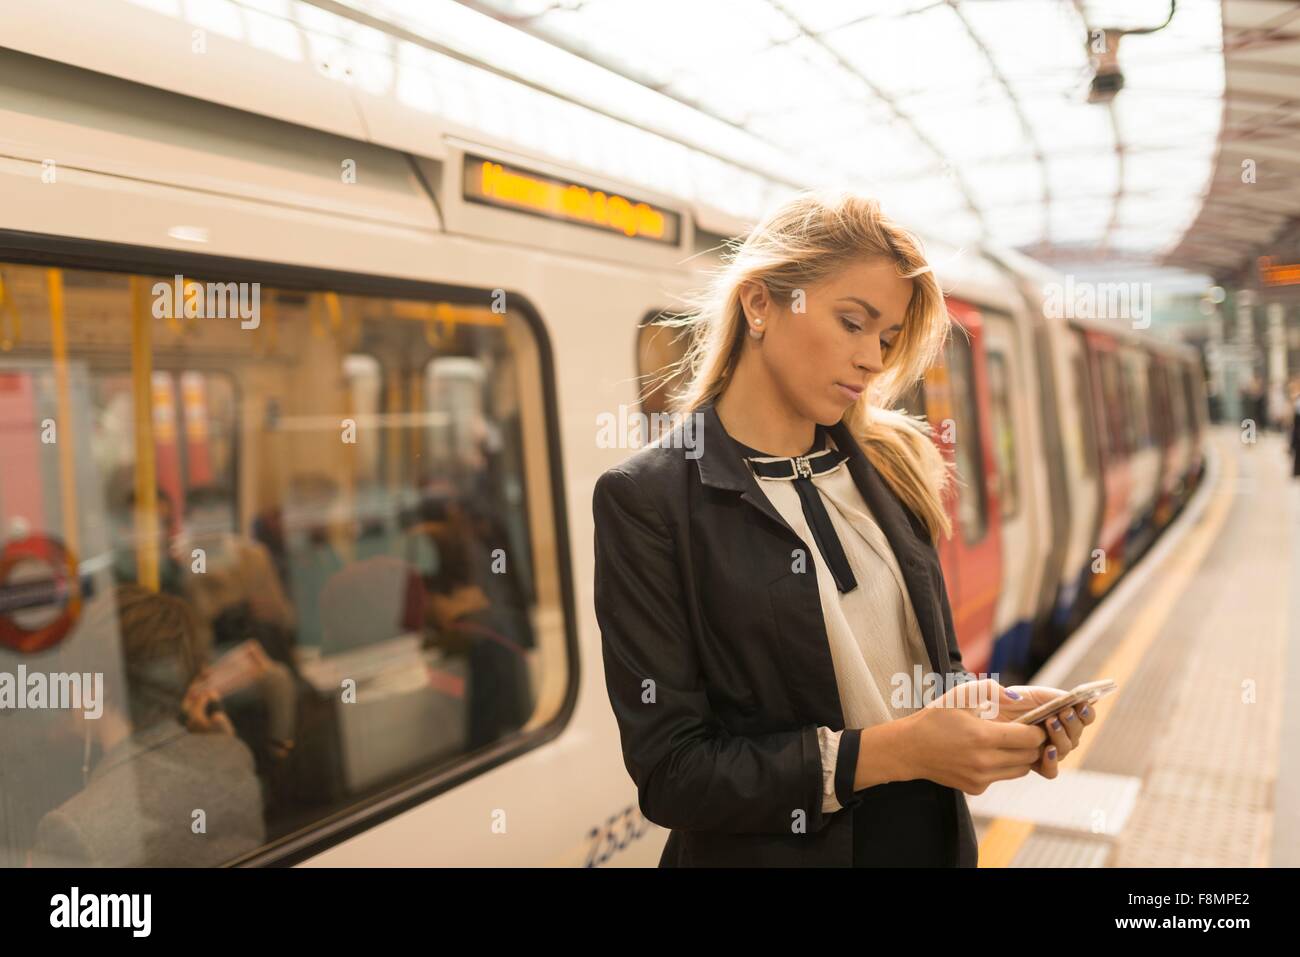 Business Woman texting on plate-forme, station de métro, London, UK Banque D'Images